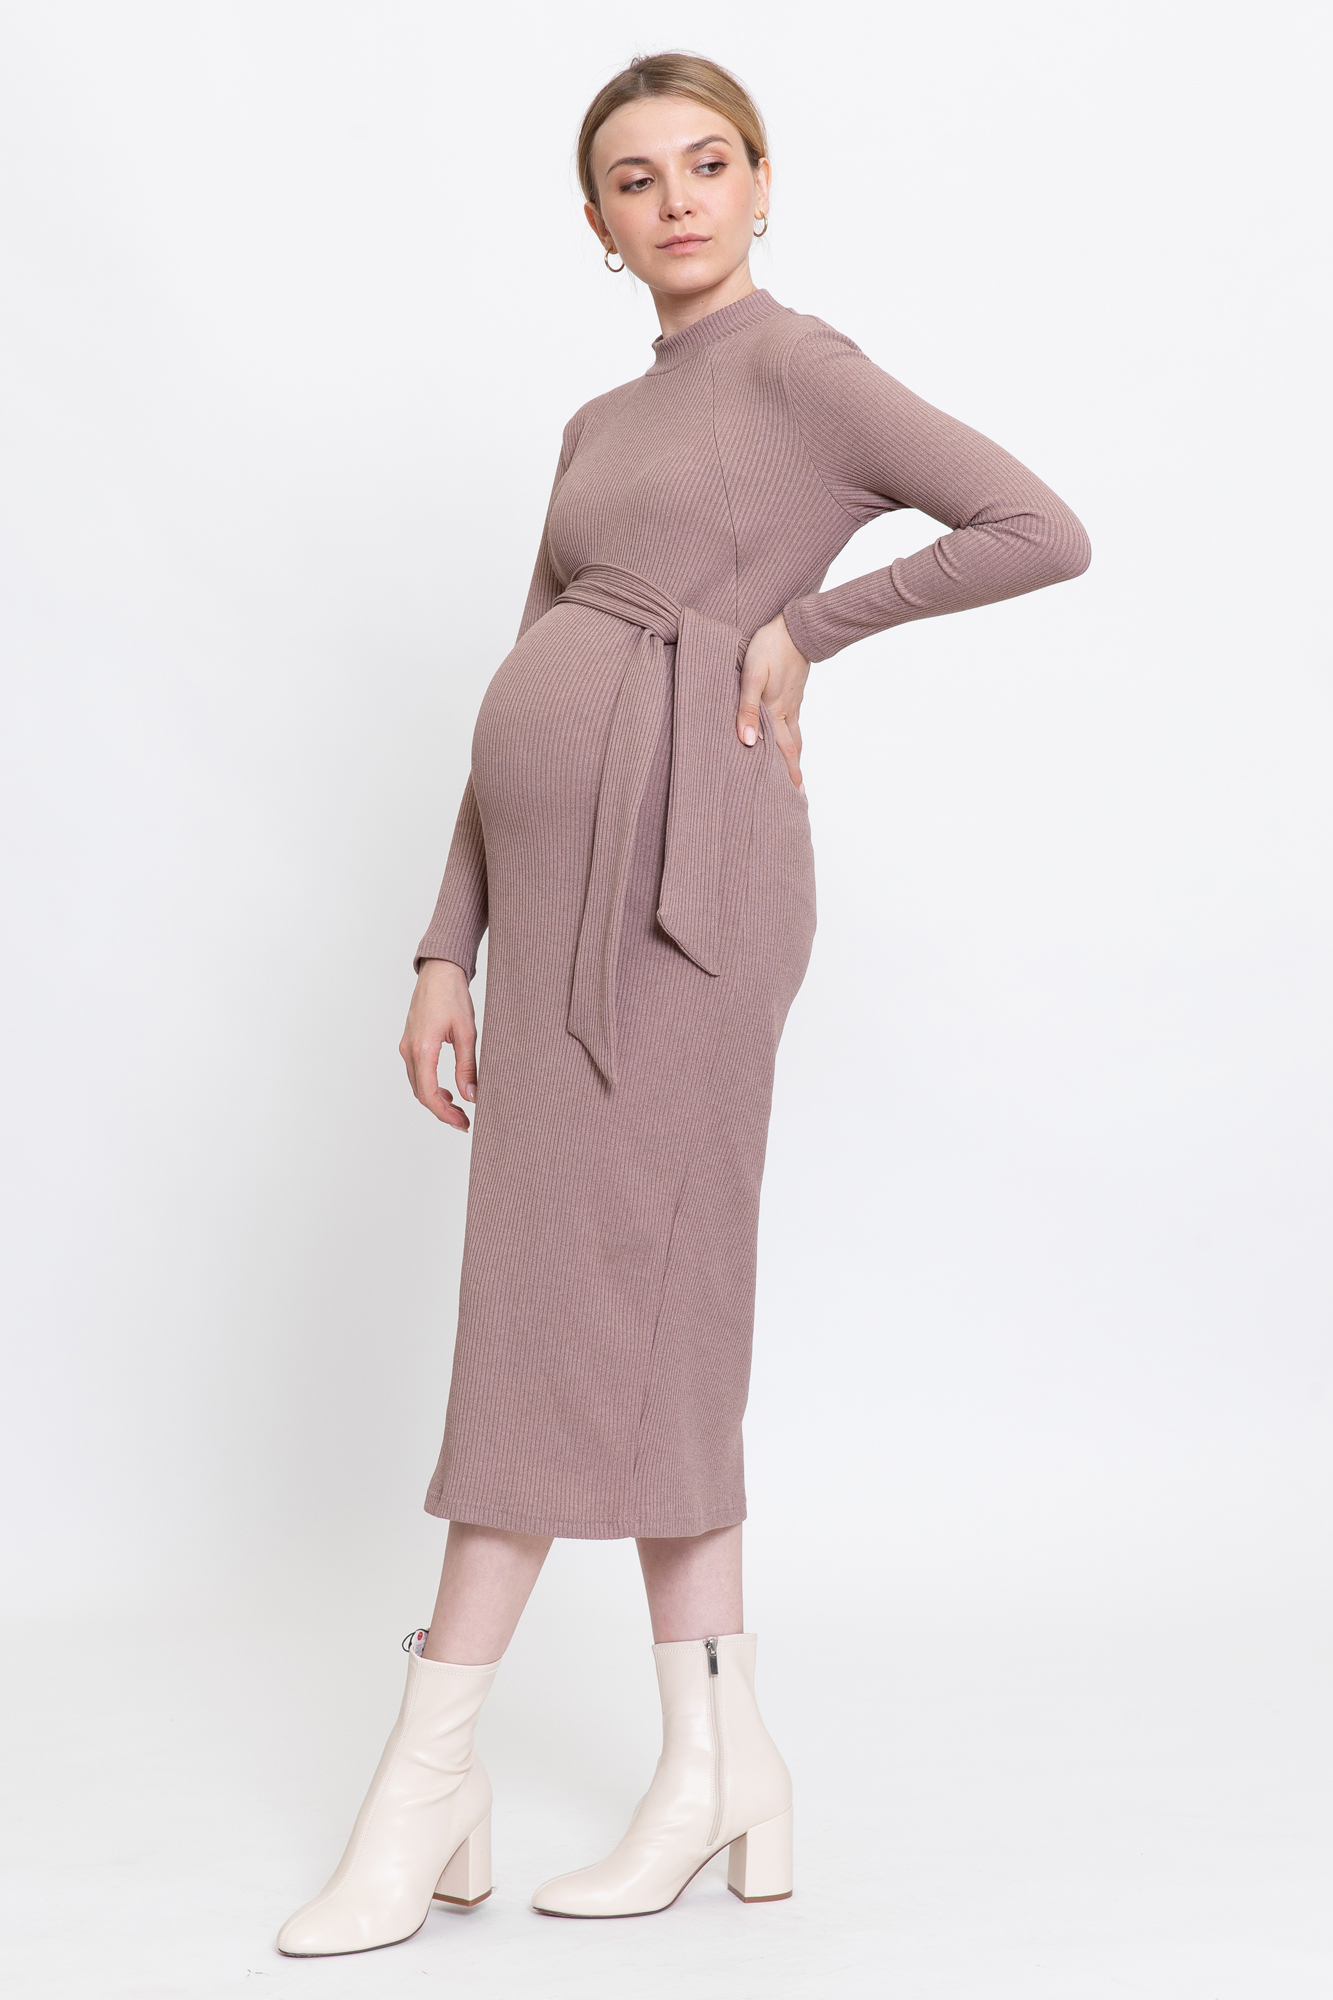 Платье для беременных женское 0178а коричневое 48 RU Magica bellezza. Цвет: коричневый